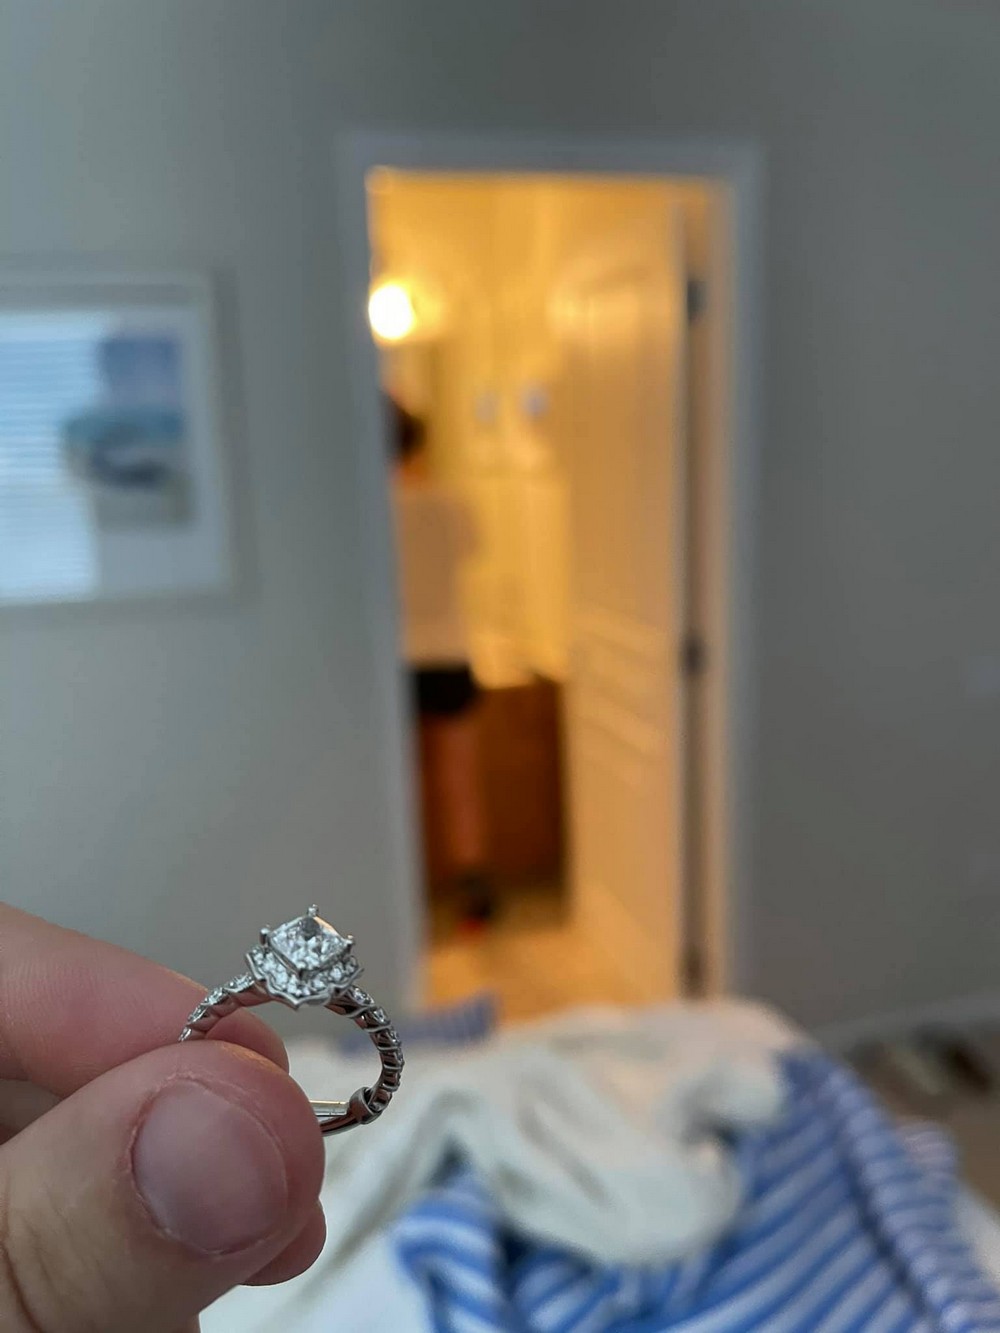 Парень несколько недель фотографировал кольцо возле своей девушки